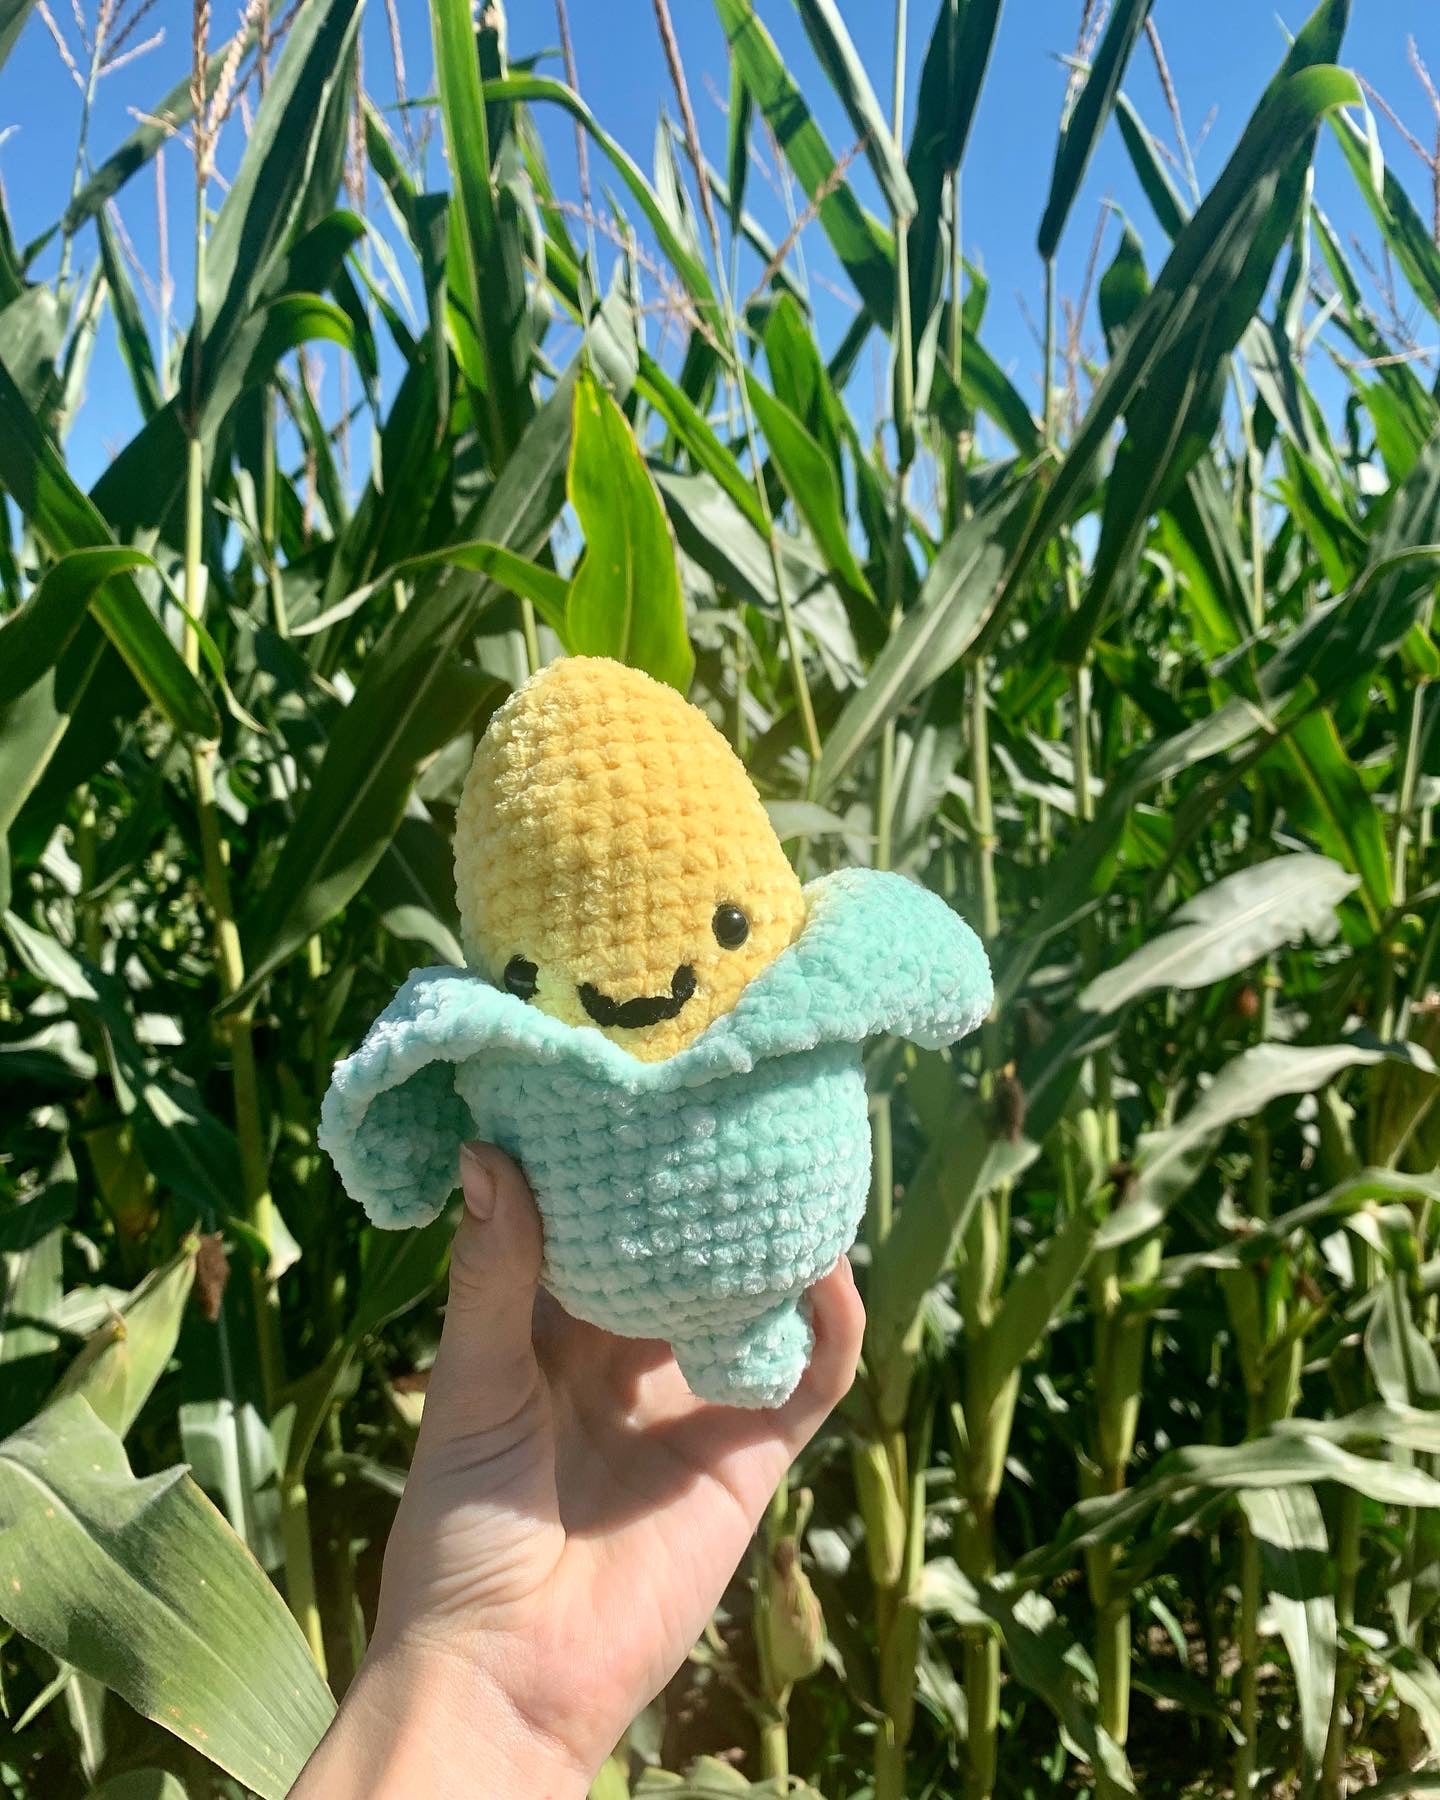 It’s Corn!